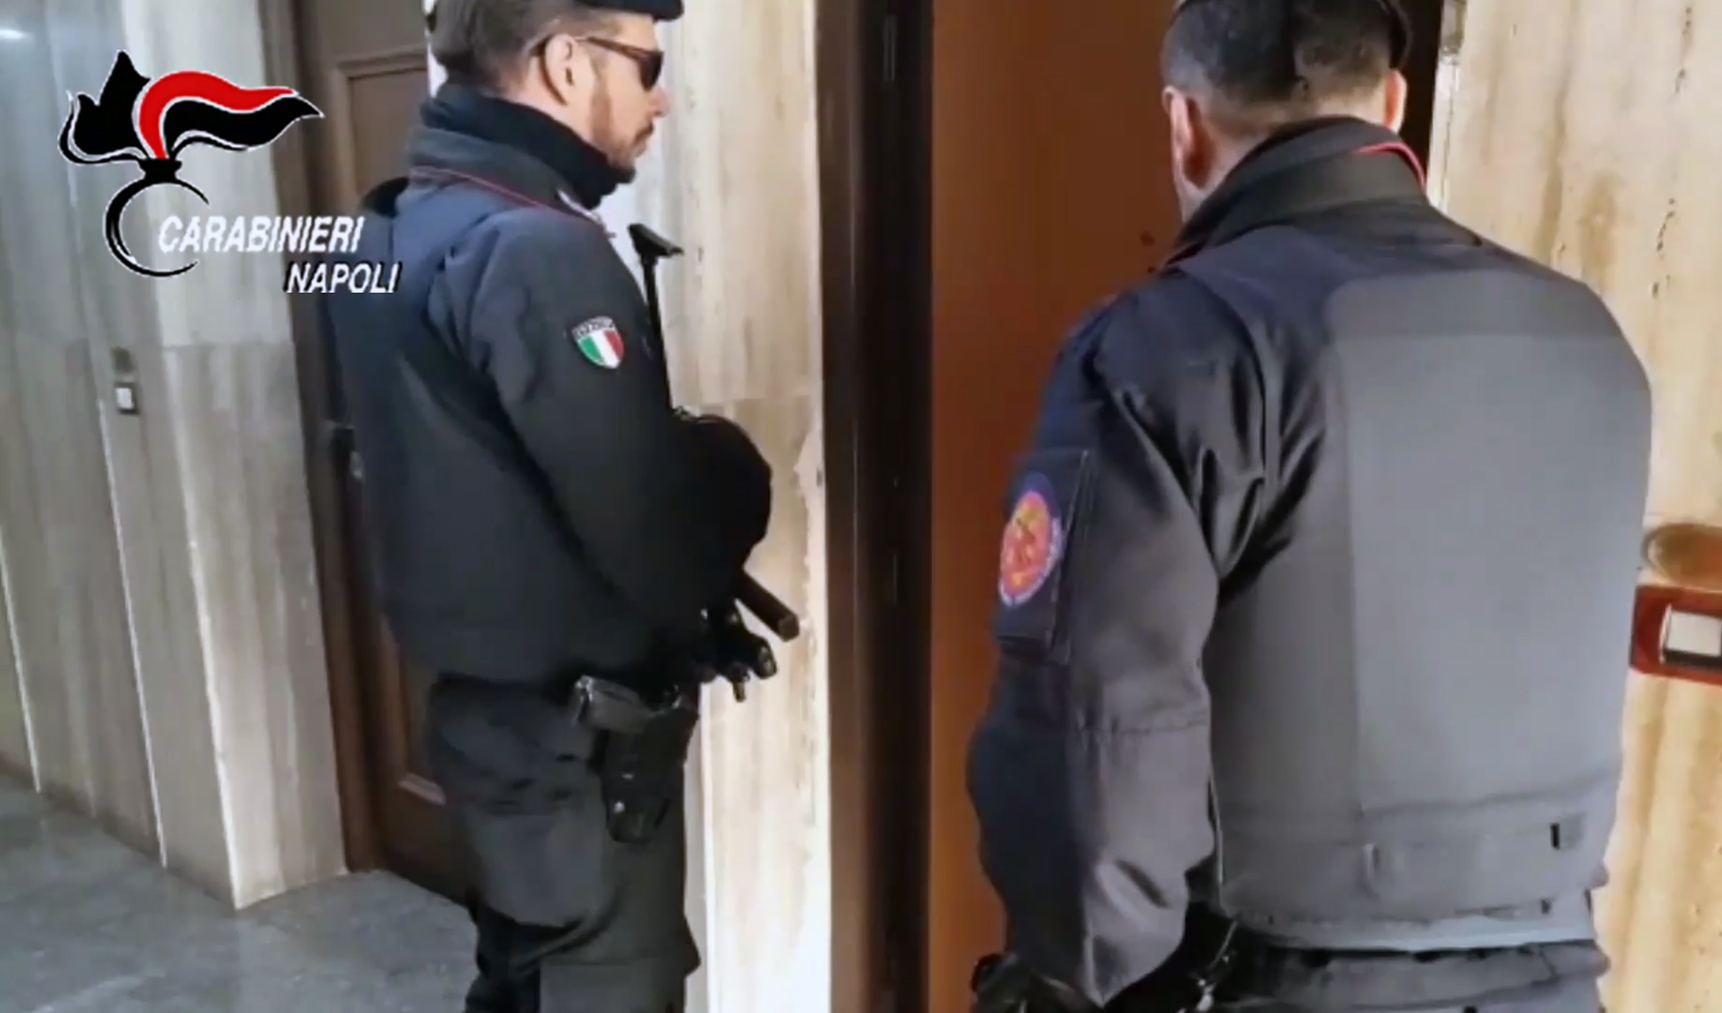  Camorra, Operazione dei Carabinieri a Napoli: 50 arresti per traffico internazionale di droga e riciclaggio